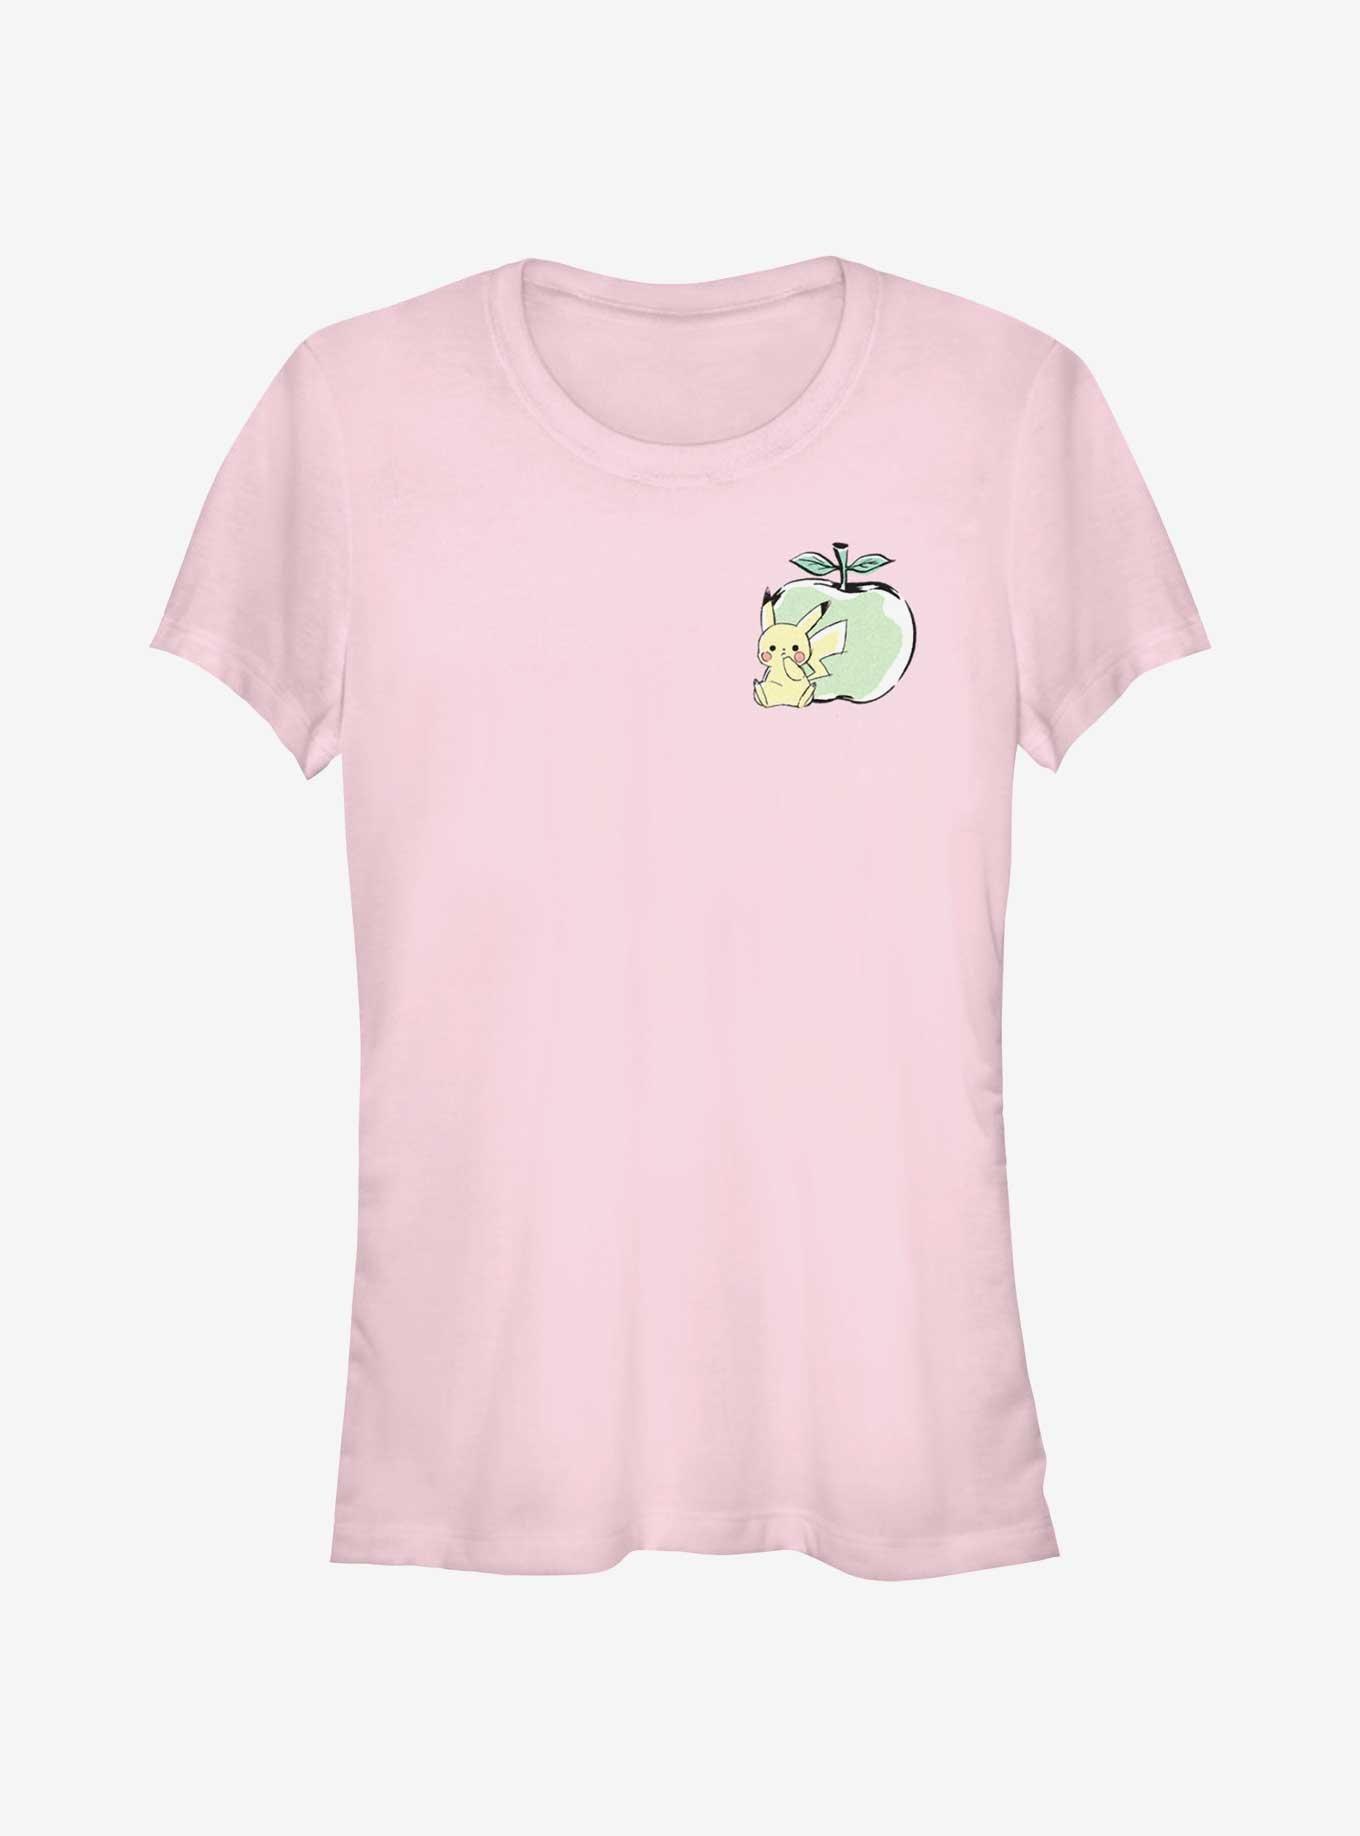 Pokemon Chibi Pikachu Apple Girls T-Shirt, LIGHT PINK, hi-res